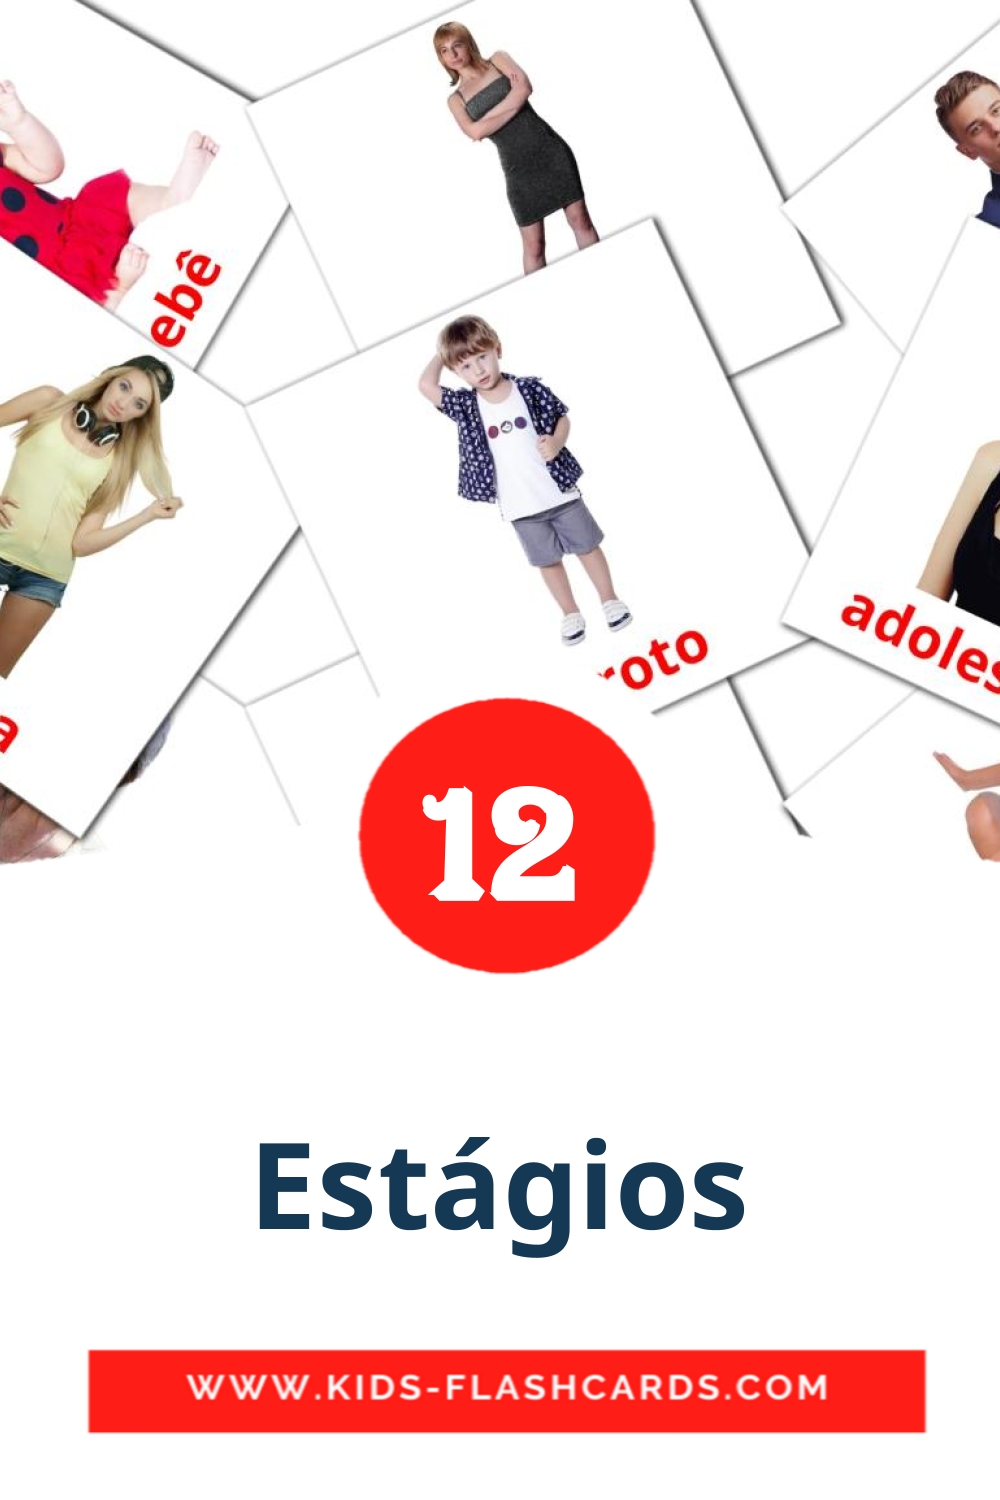 12 carte illustrate di Estágios per la scuola materna in portoghese